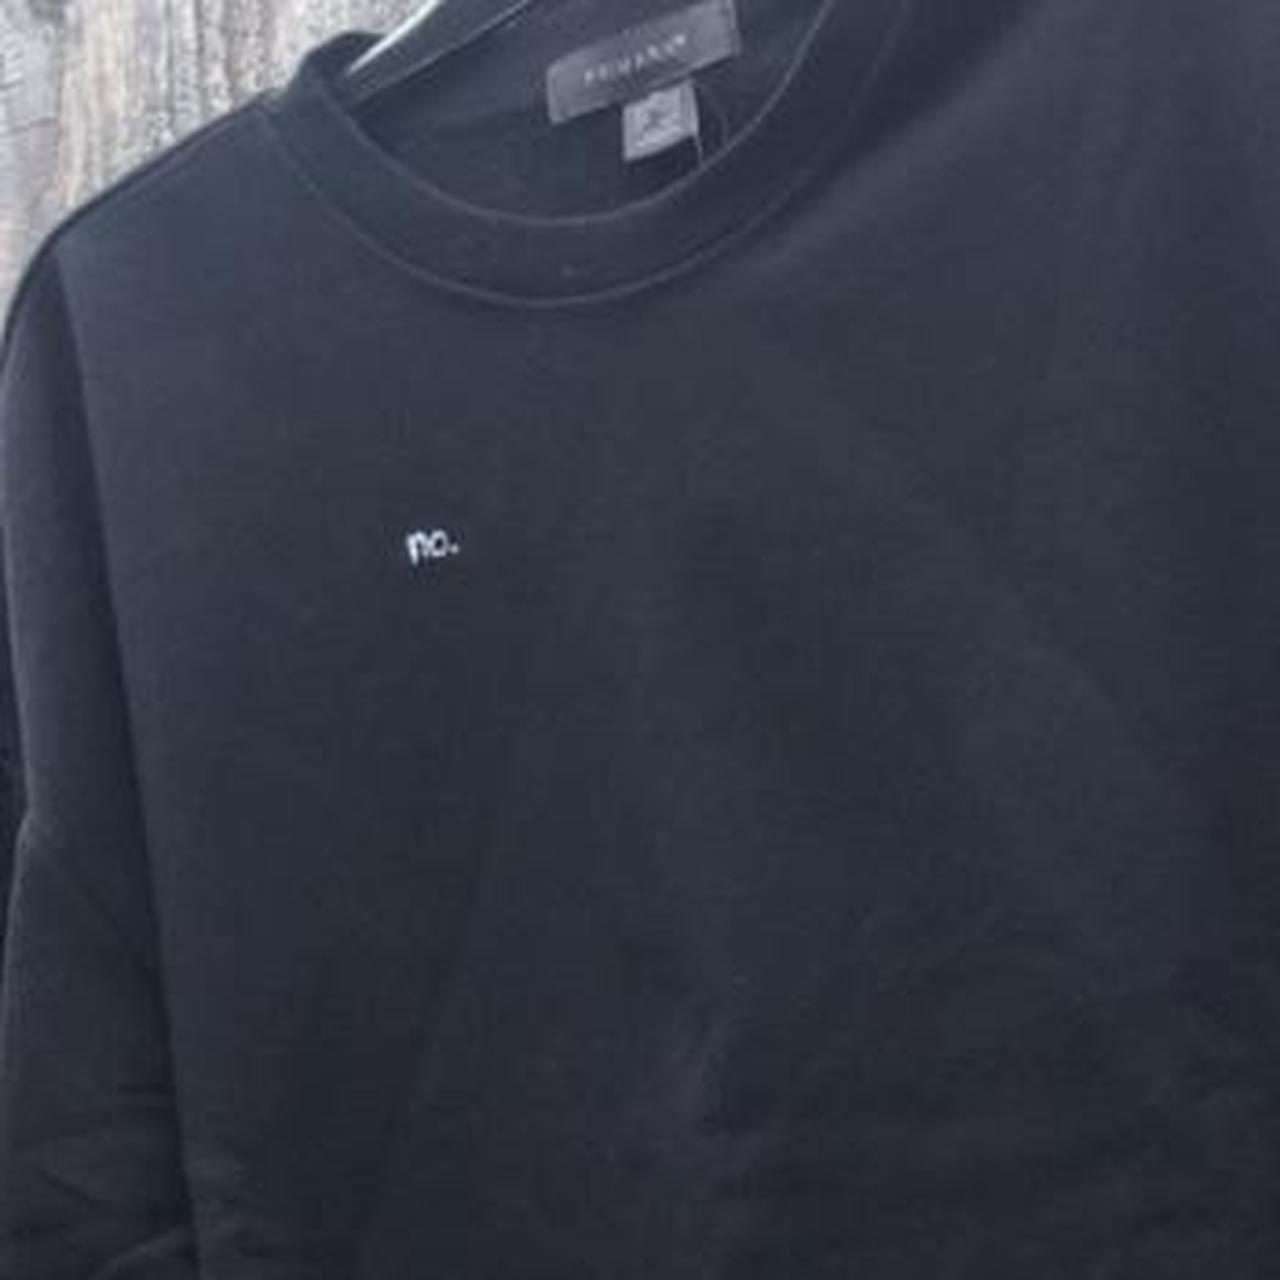 Black jumper/sweatshirt. Hand embroidered “no.”... - Depop